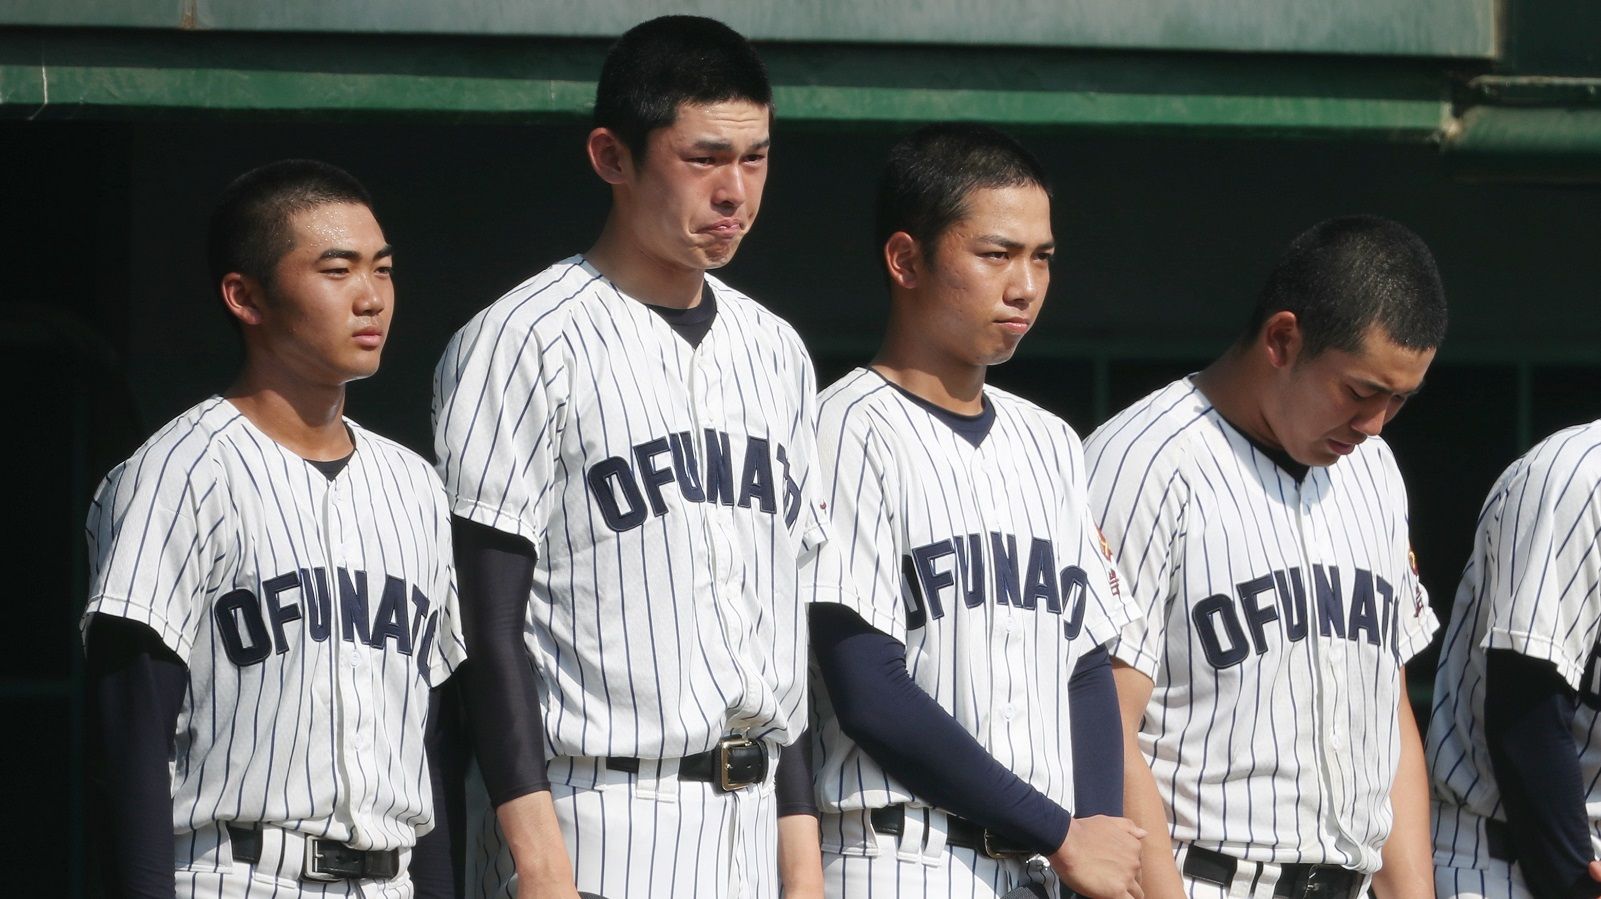 ｢大船渡･佐々木朗希｣の終わった夏と194球の謎 今の高校野球の現状は｢煮詰まっている｣ | 日本野球の今そこにある危機 | 東洋経済オンライン